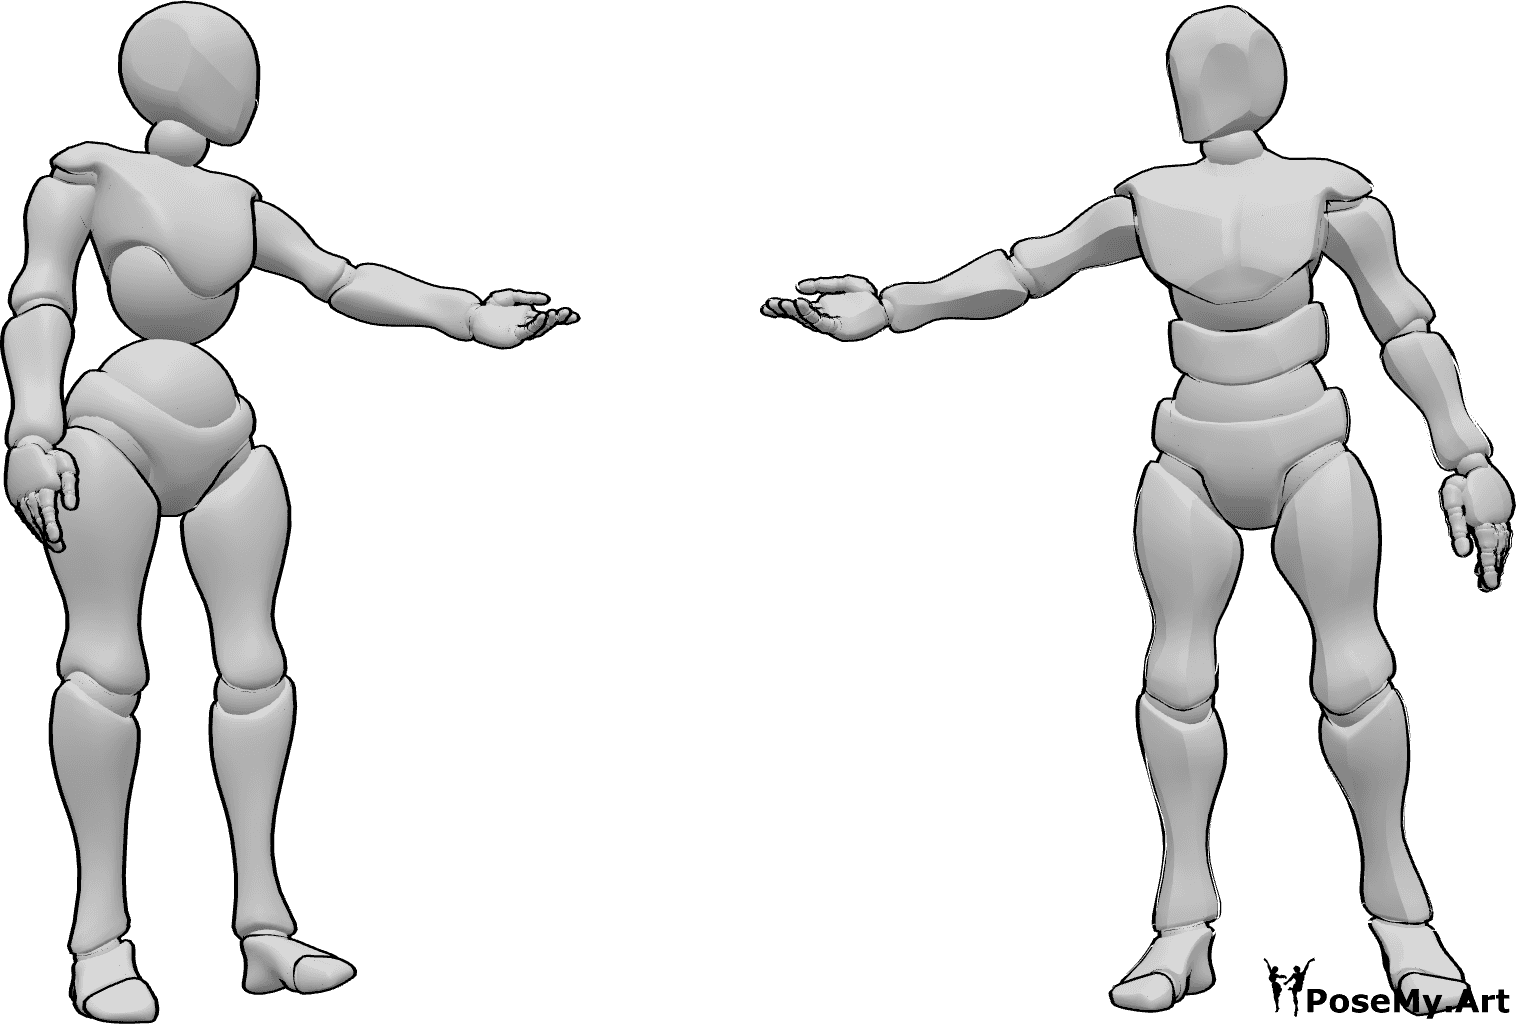 Riferimento alle pose- Posa femminile maschile di raggiungimento - La donna e l'uomo sono in piedi, si guardano e si tendono la mano.